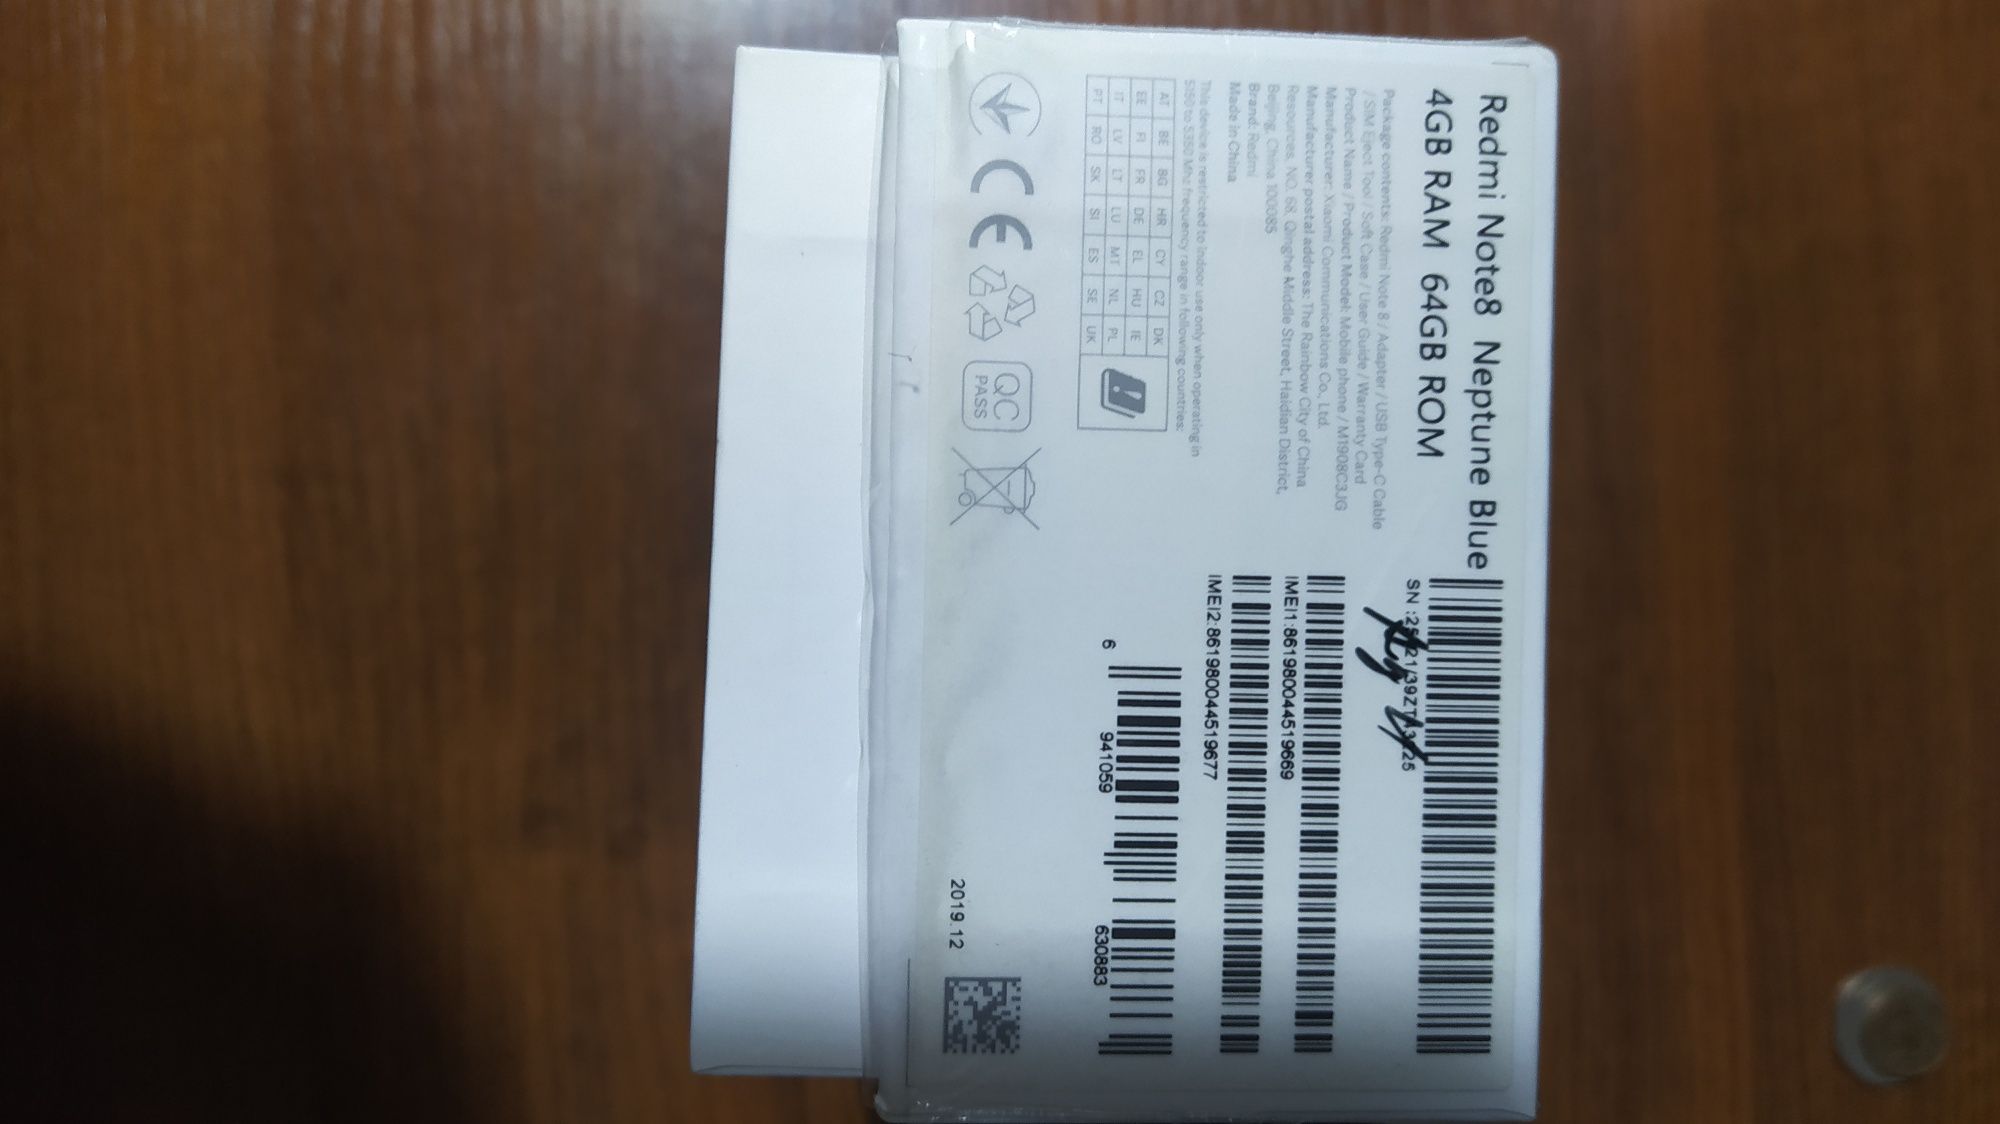 Продам Redmi Note 8